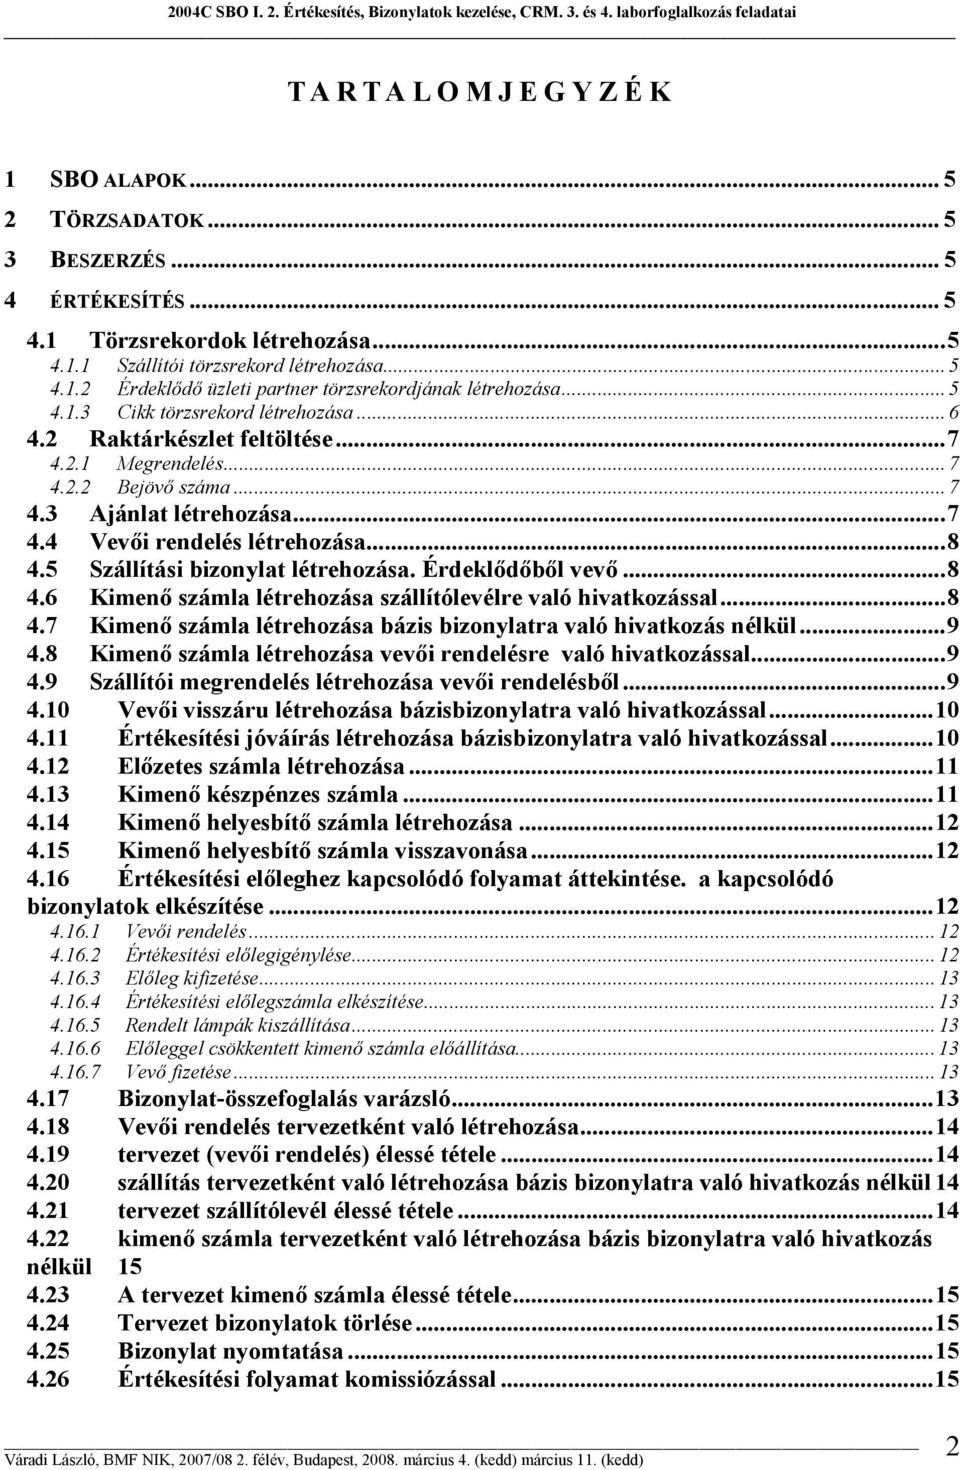 SAP Business One 2004C - PDF Ingyenes letöltés